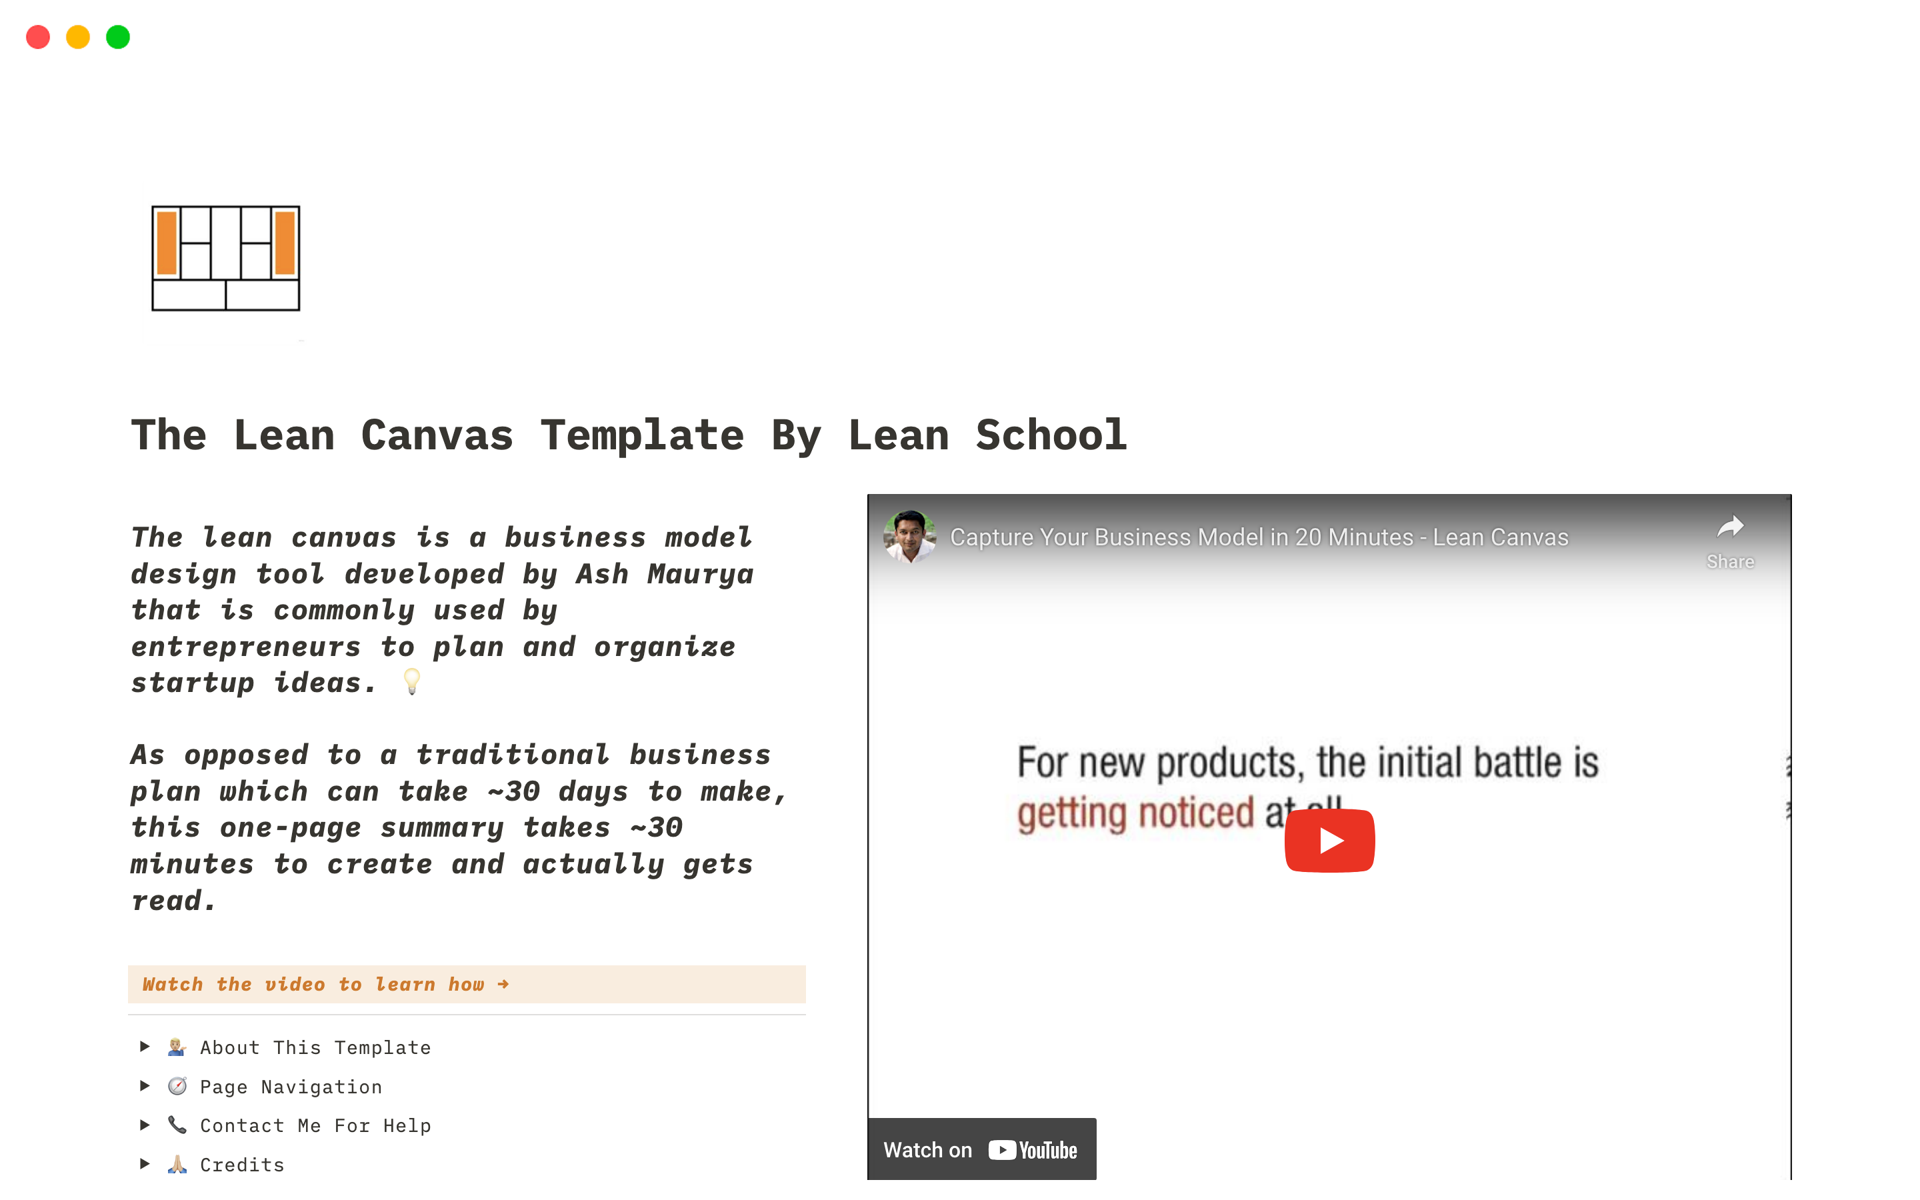 Vista previa de una plantilla para The Lean Canvas Template By Lean School